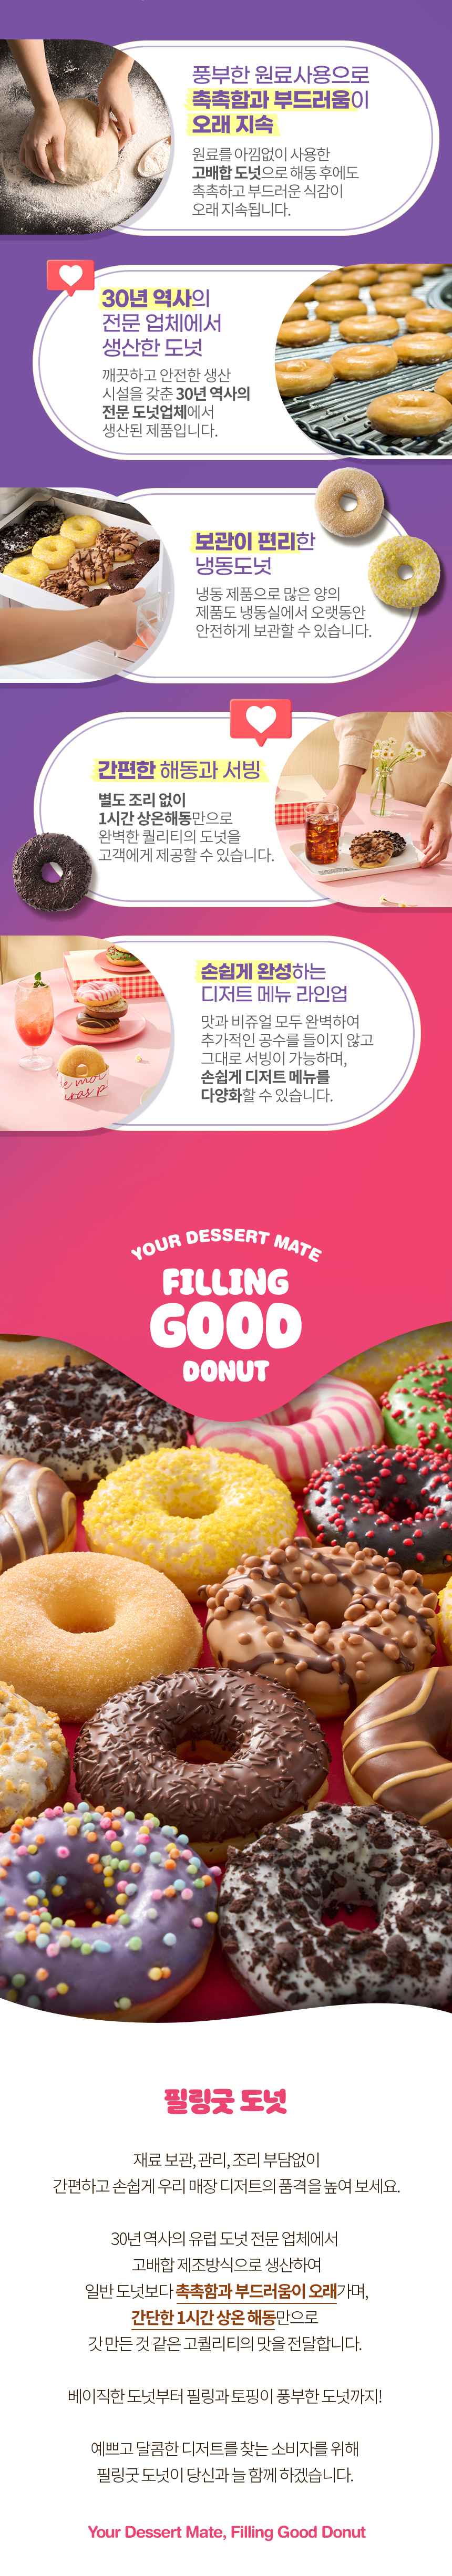 Filing_Good_Donut_Lemon_02